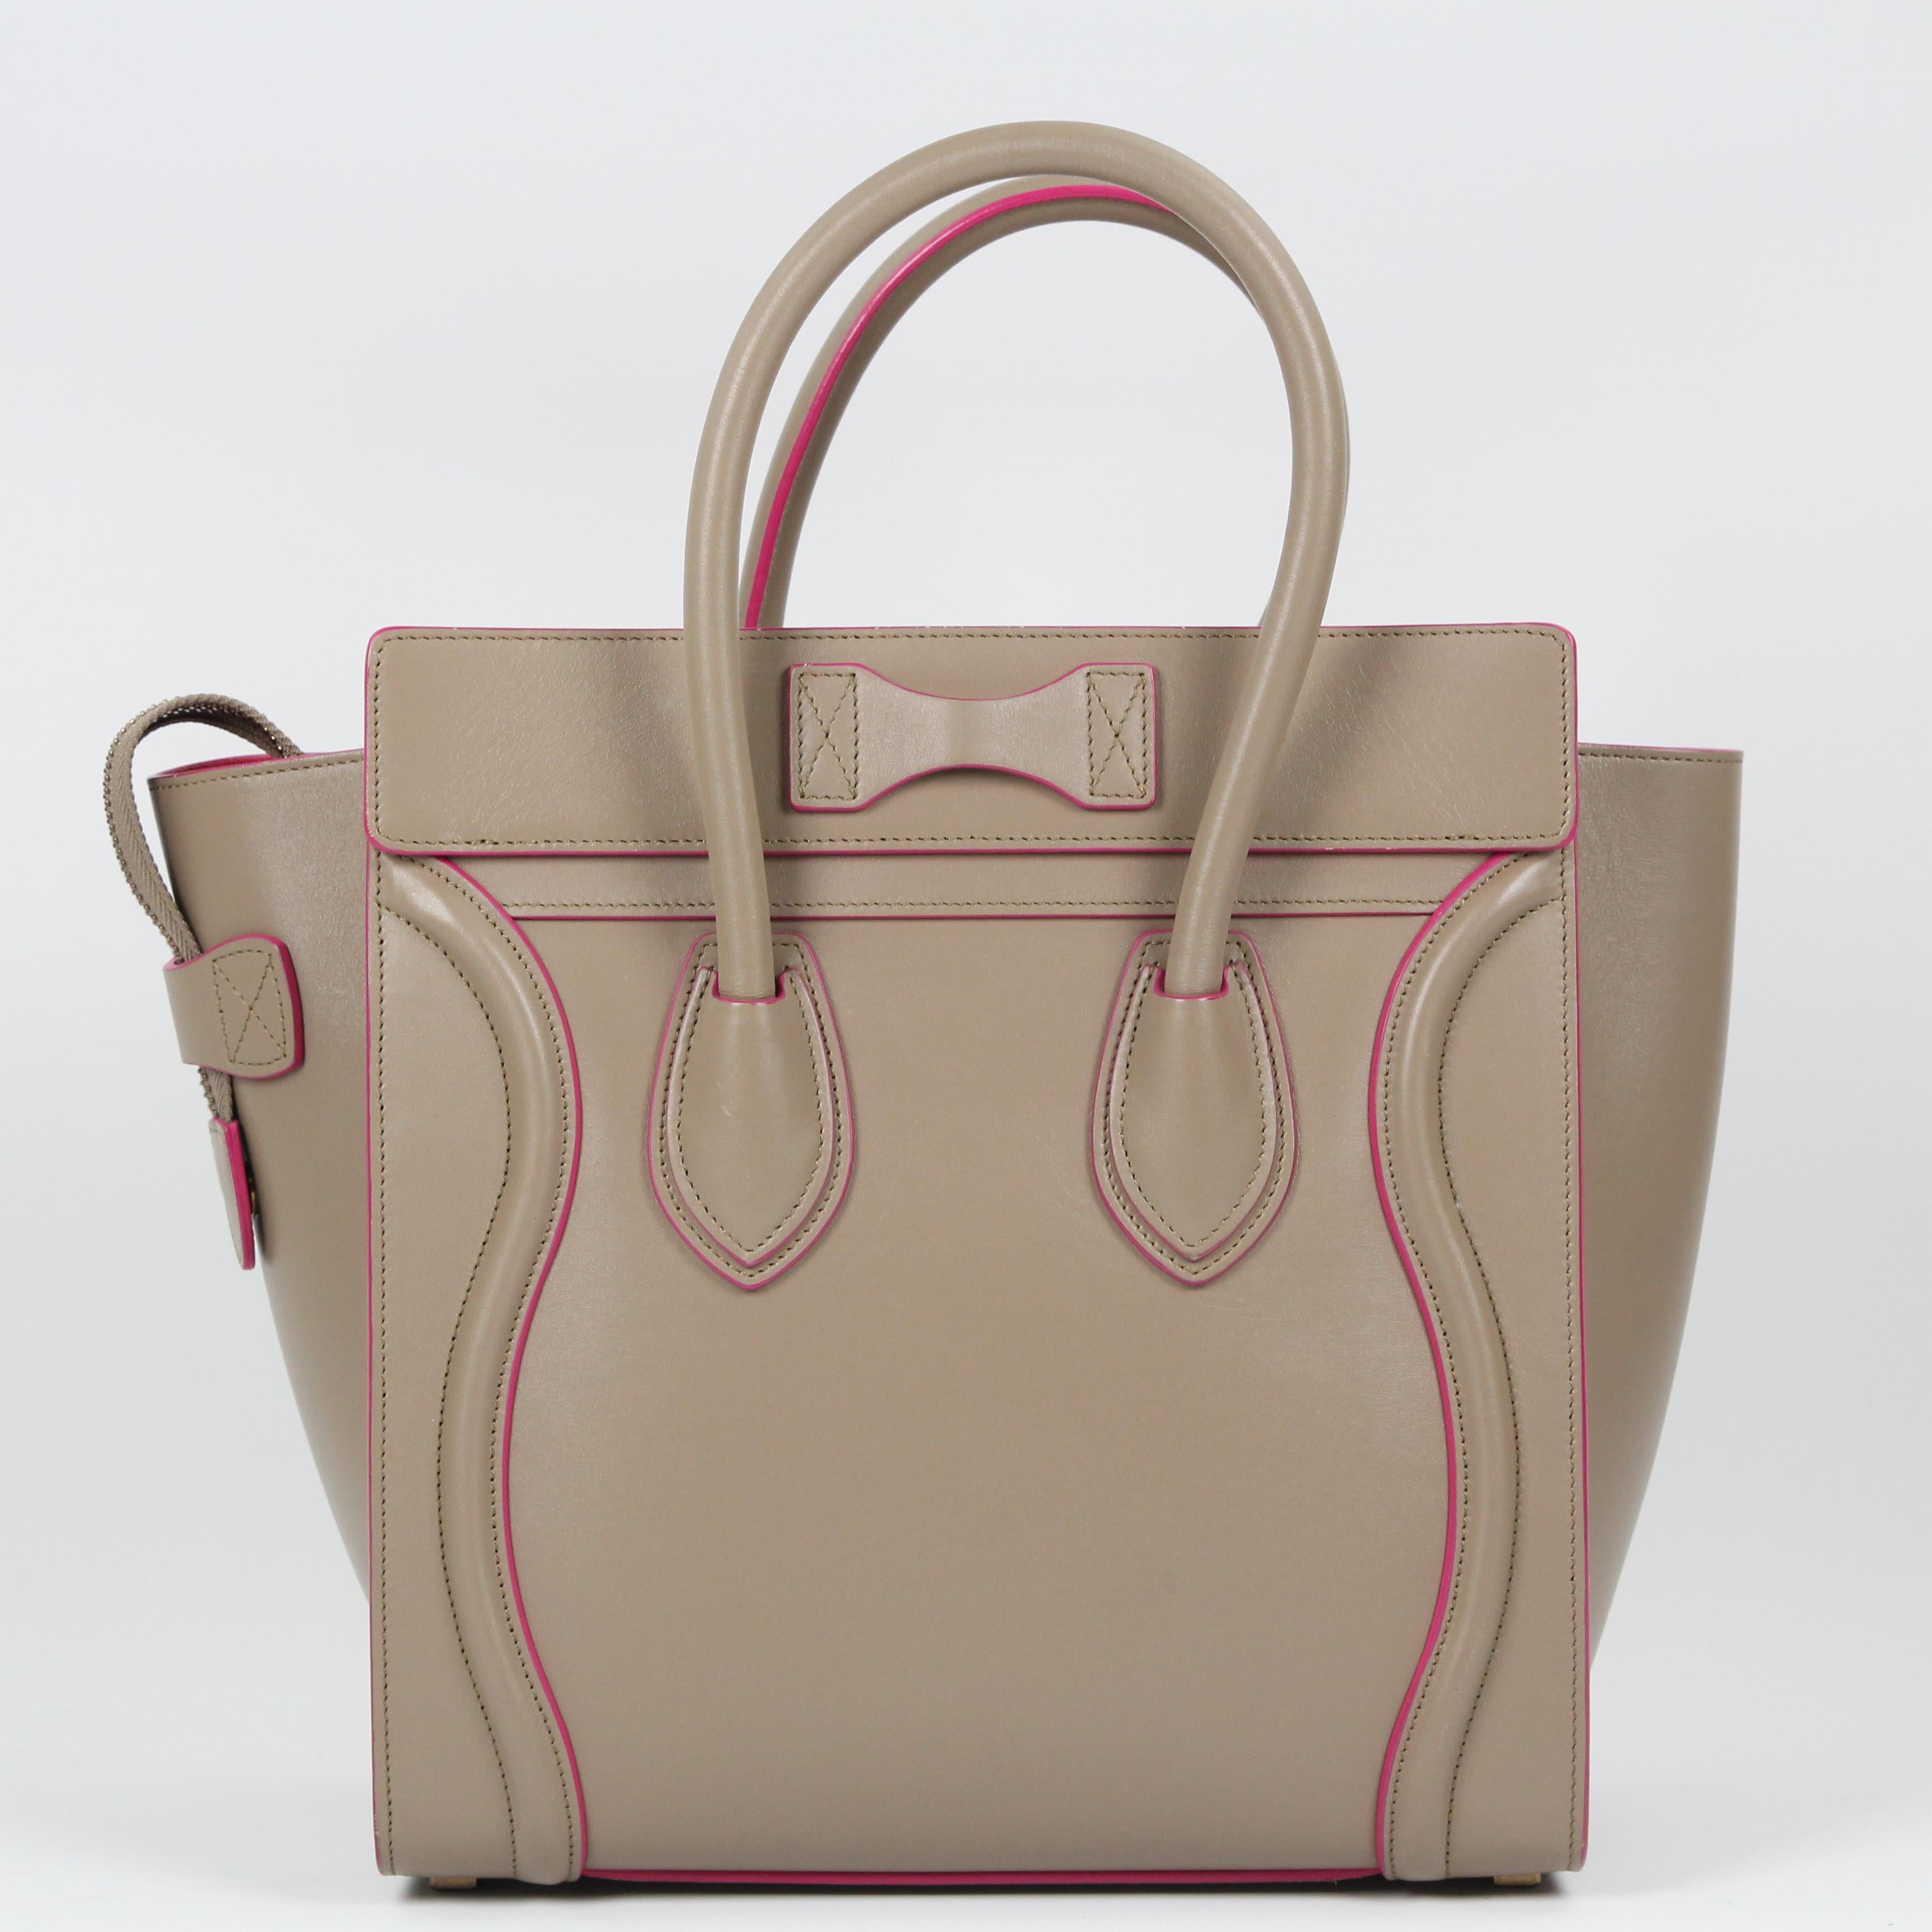 Celine Luggage leather handbag For Sale 14